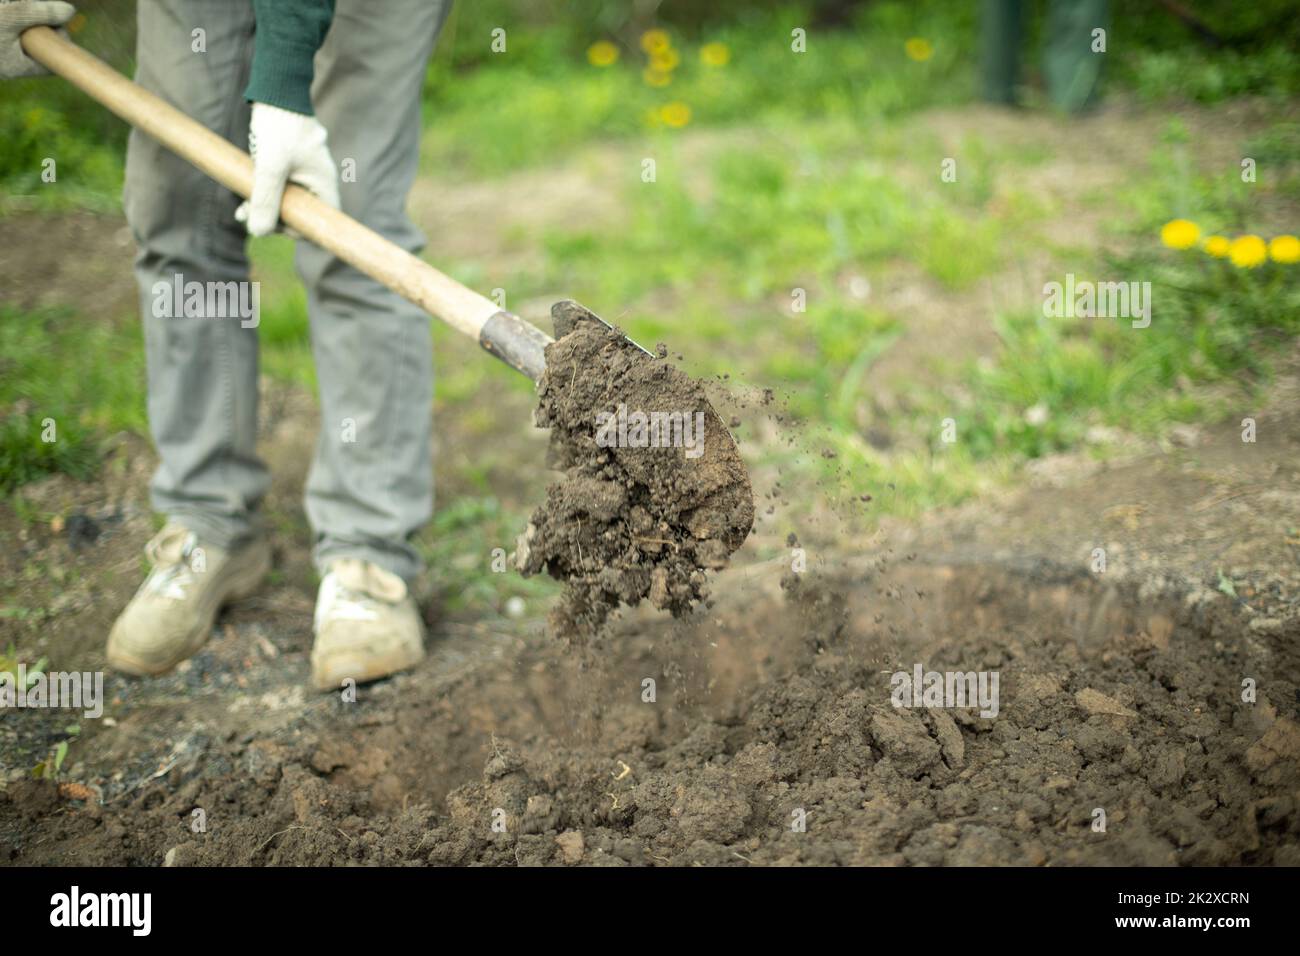 Der Kerl gräbt. Mann mit Schaufel. Details des ländlichen Lebens. Stockfoto